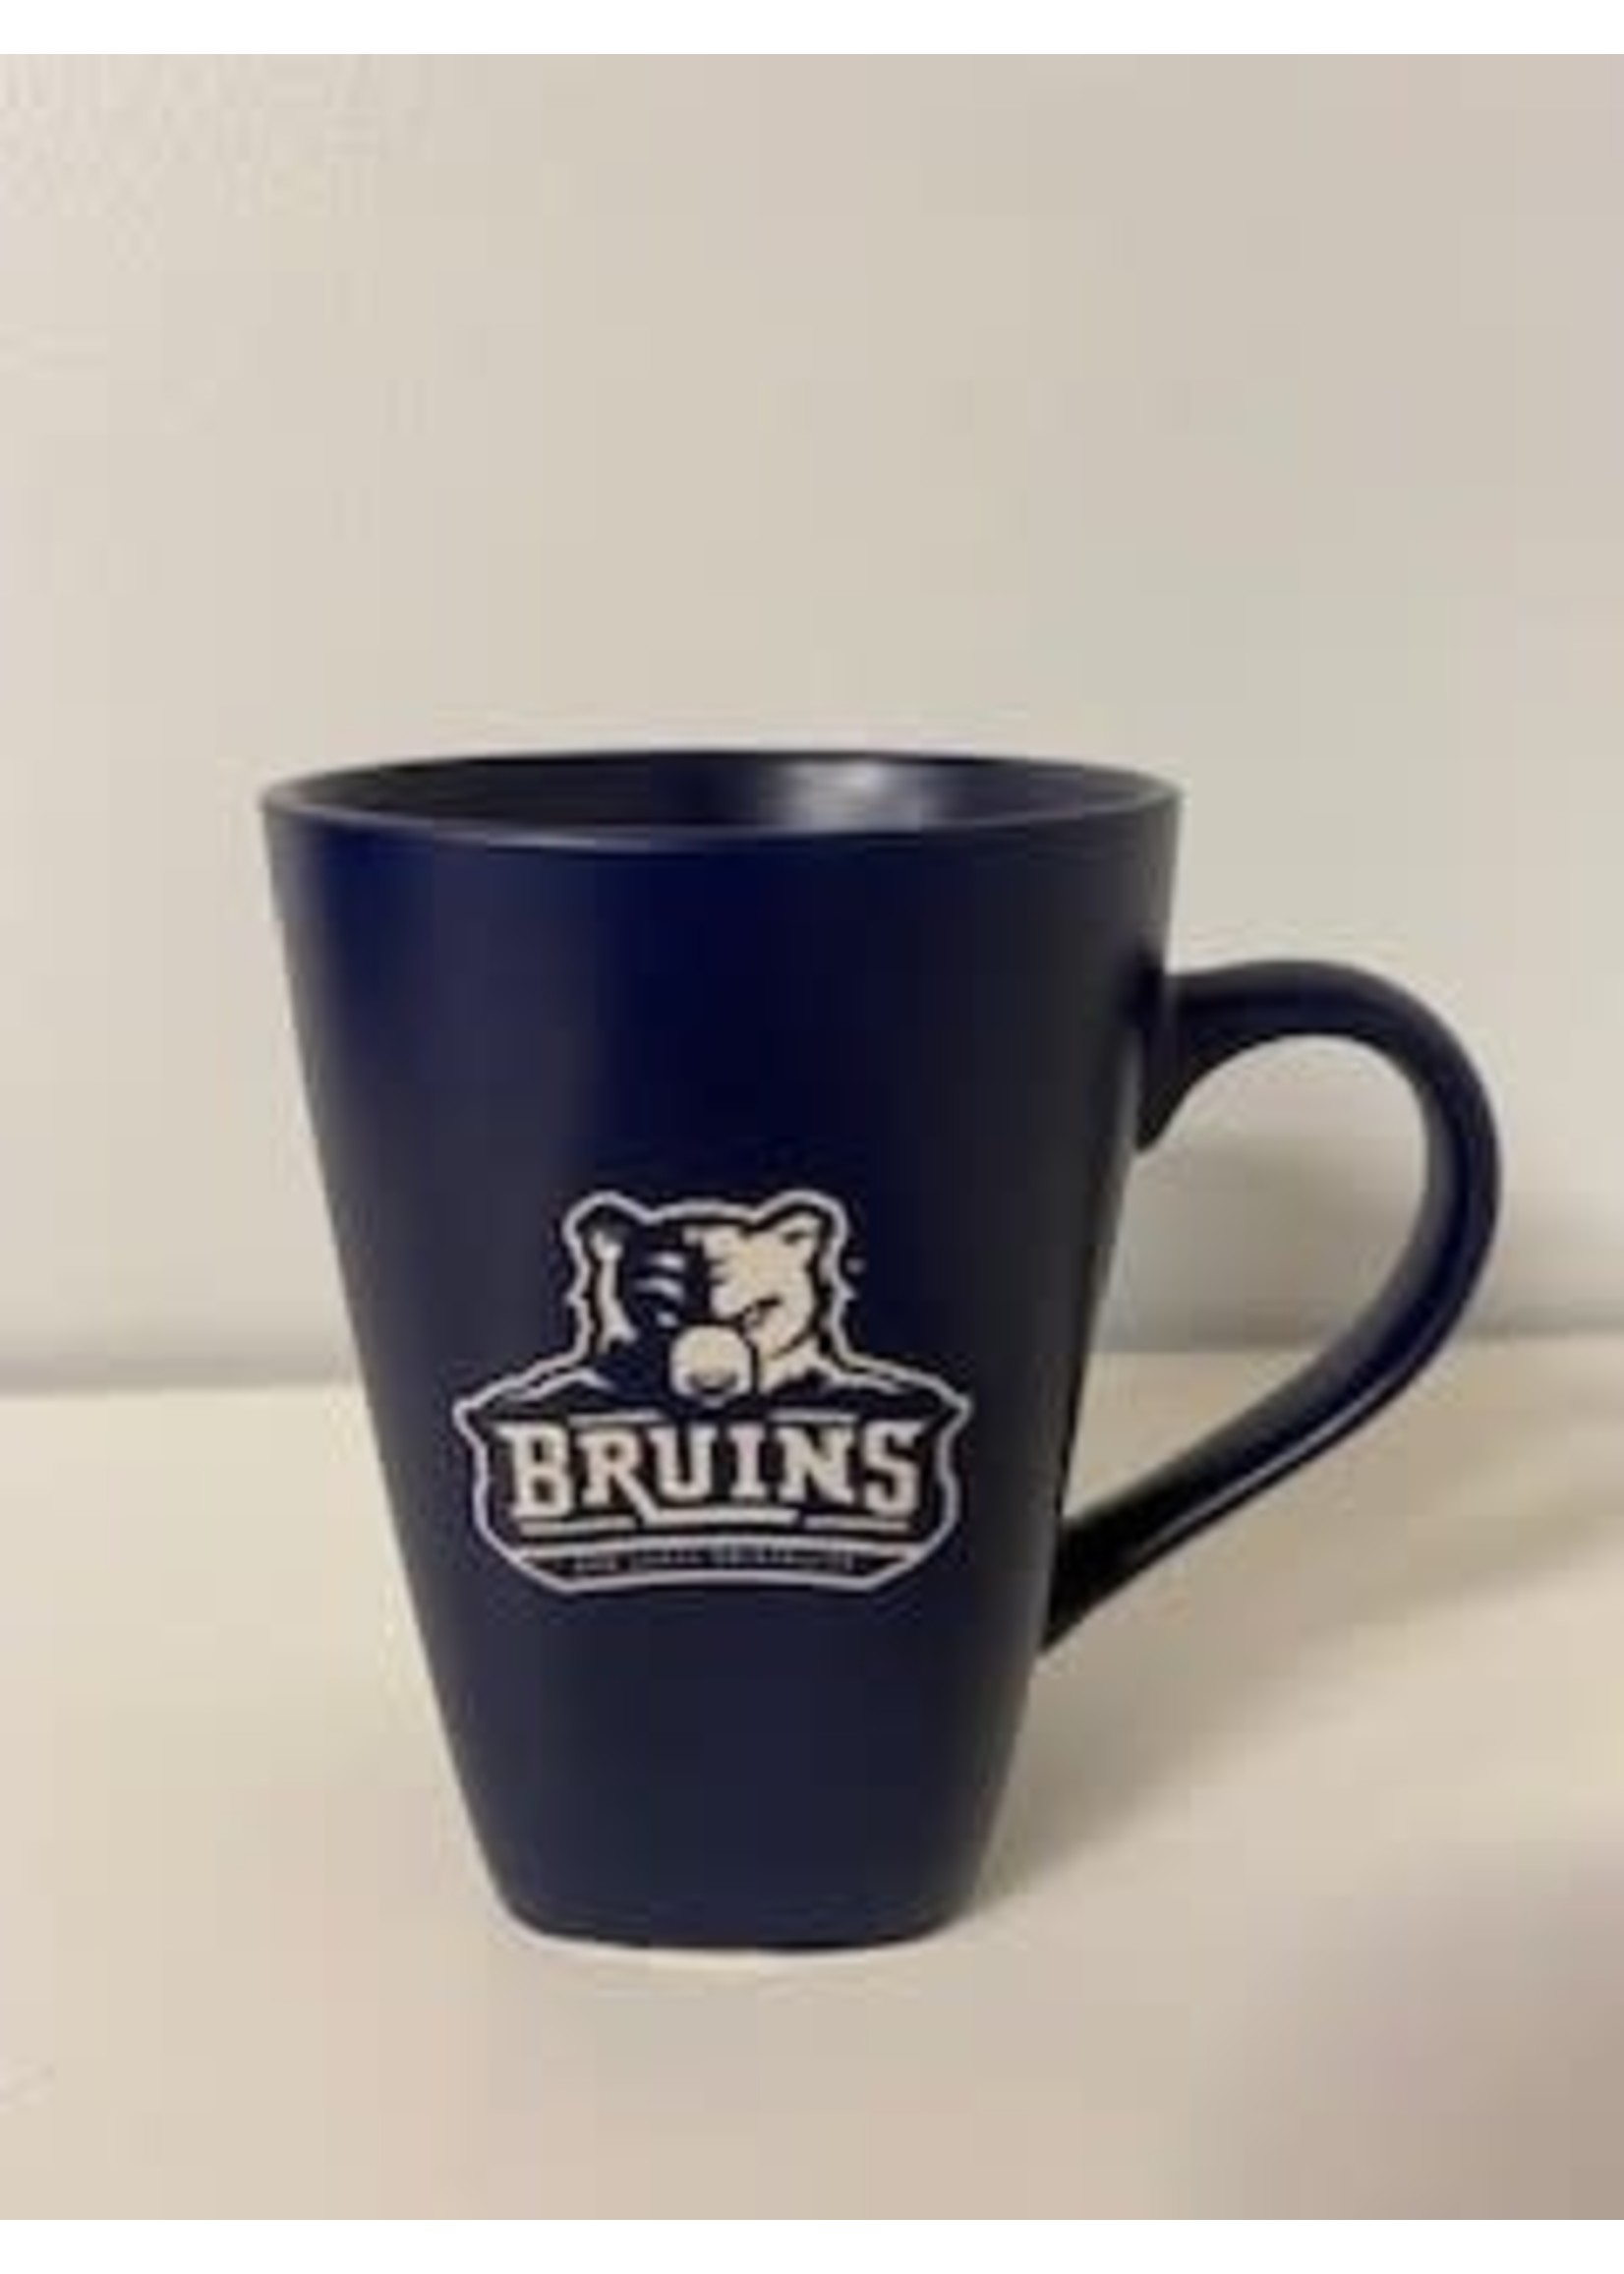 Bruins Cafe Mug 15 oz.